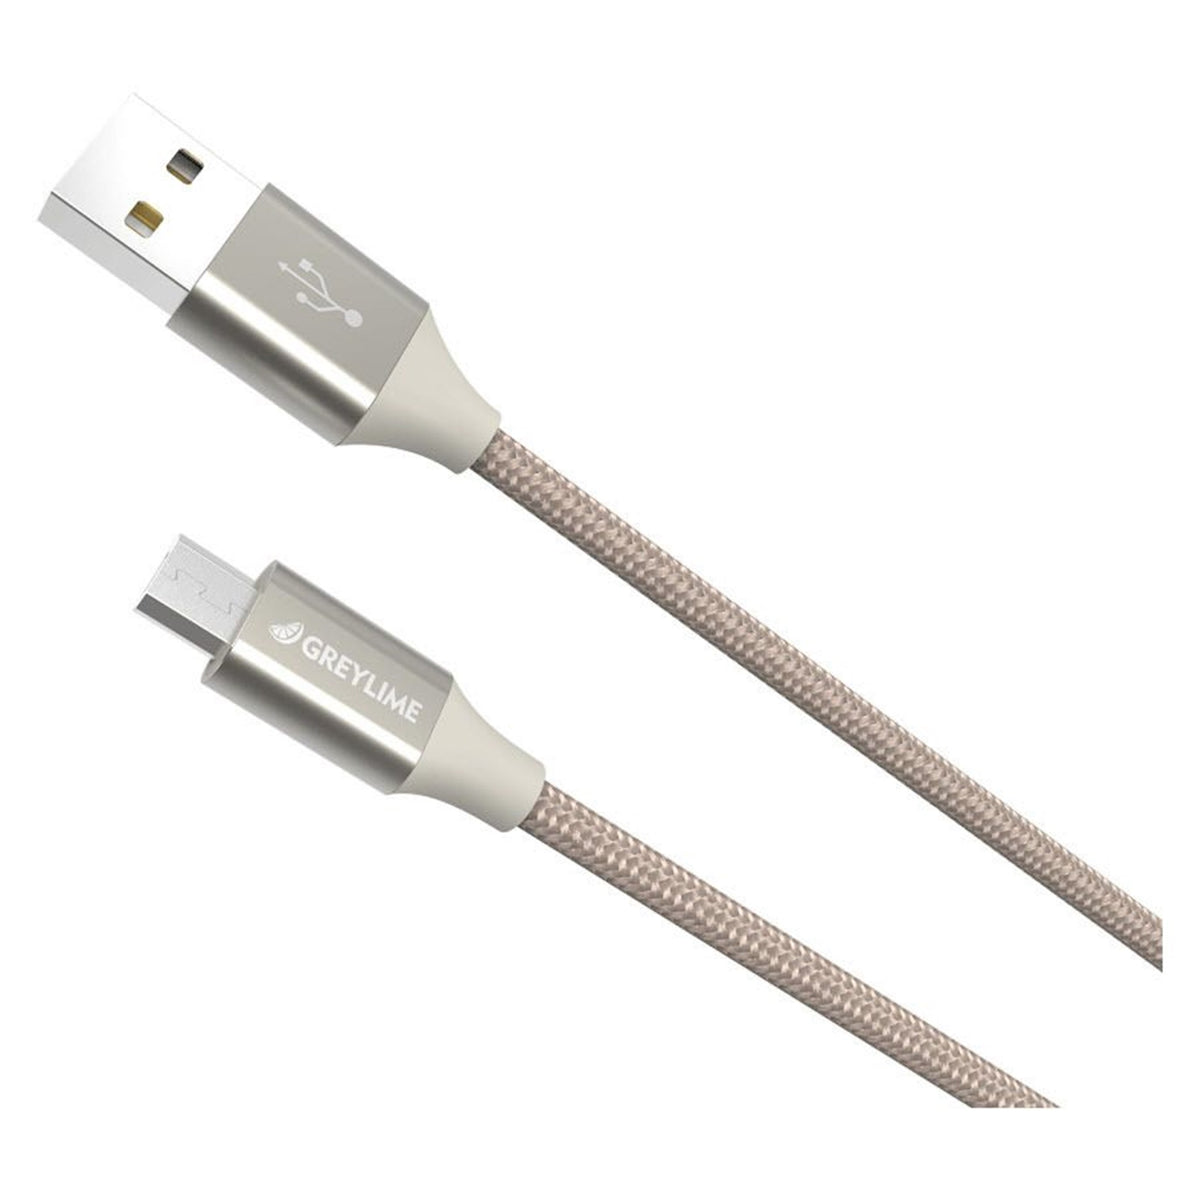 Ikke moderigtigt kontakt Valg Braided USB-A til Micro USB Kabel Beige 1m - GreyLime